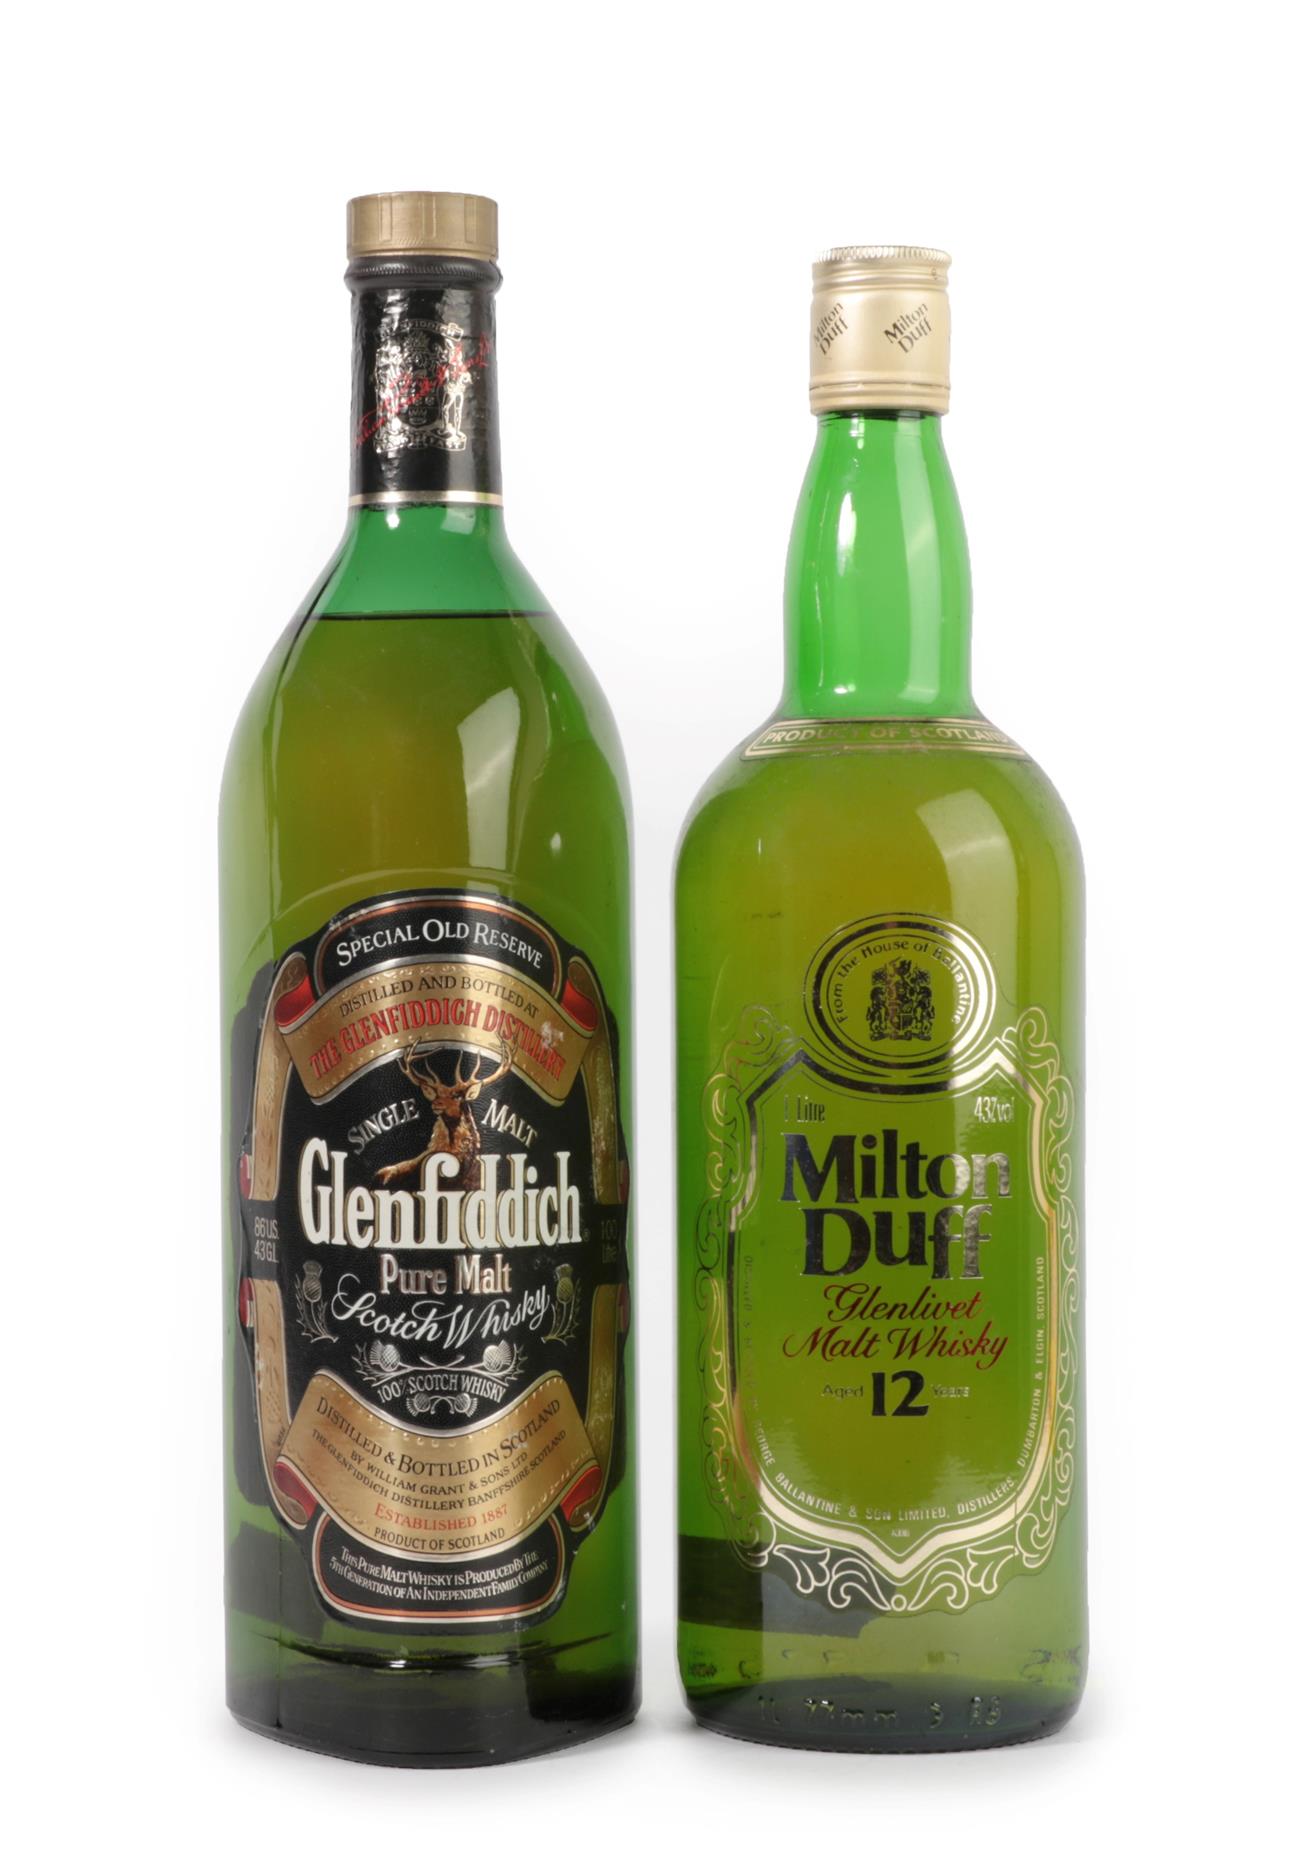 Milton Duff 12 Years Old Glenlivet Malt Whisky, 1980s bottling, 43% vol 1Litre (one bottle),